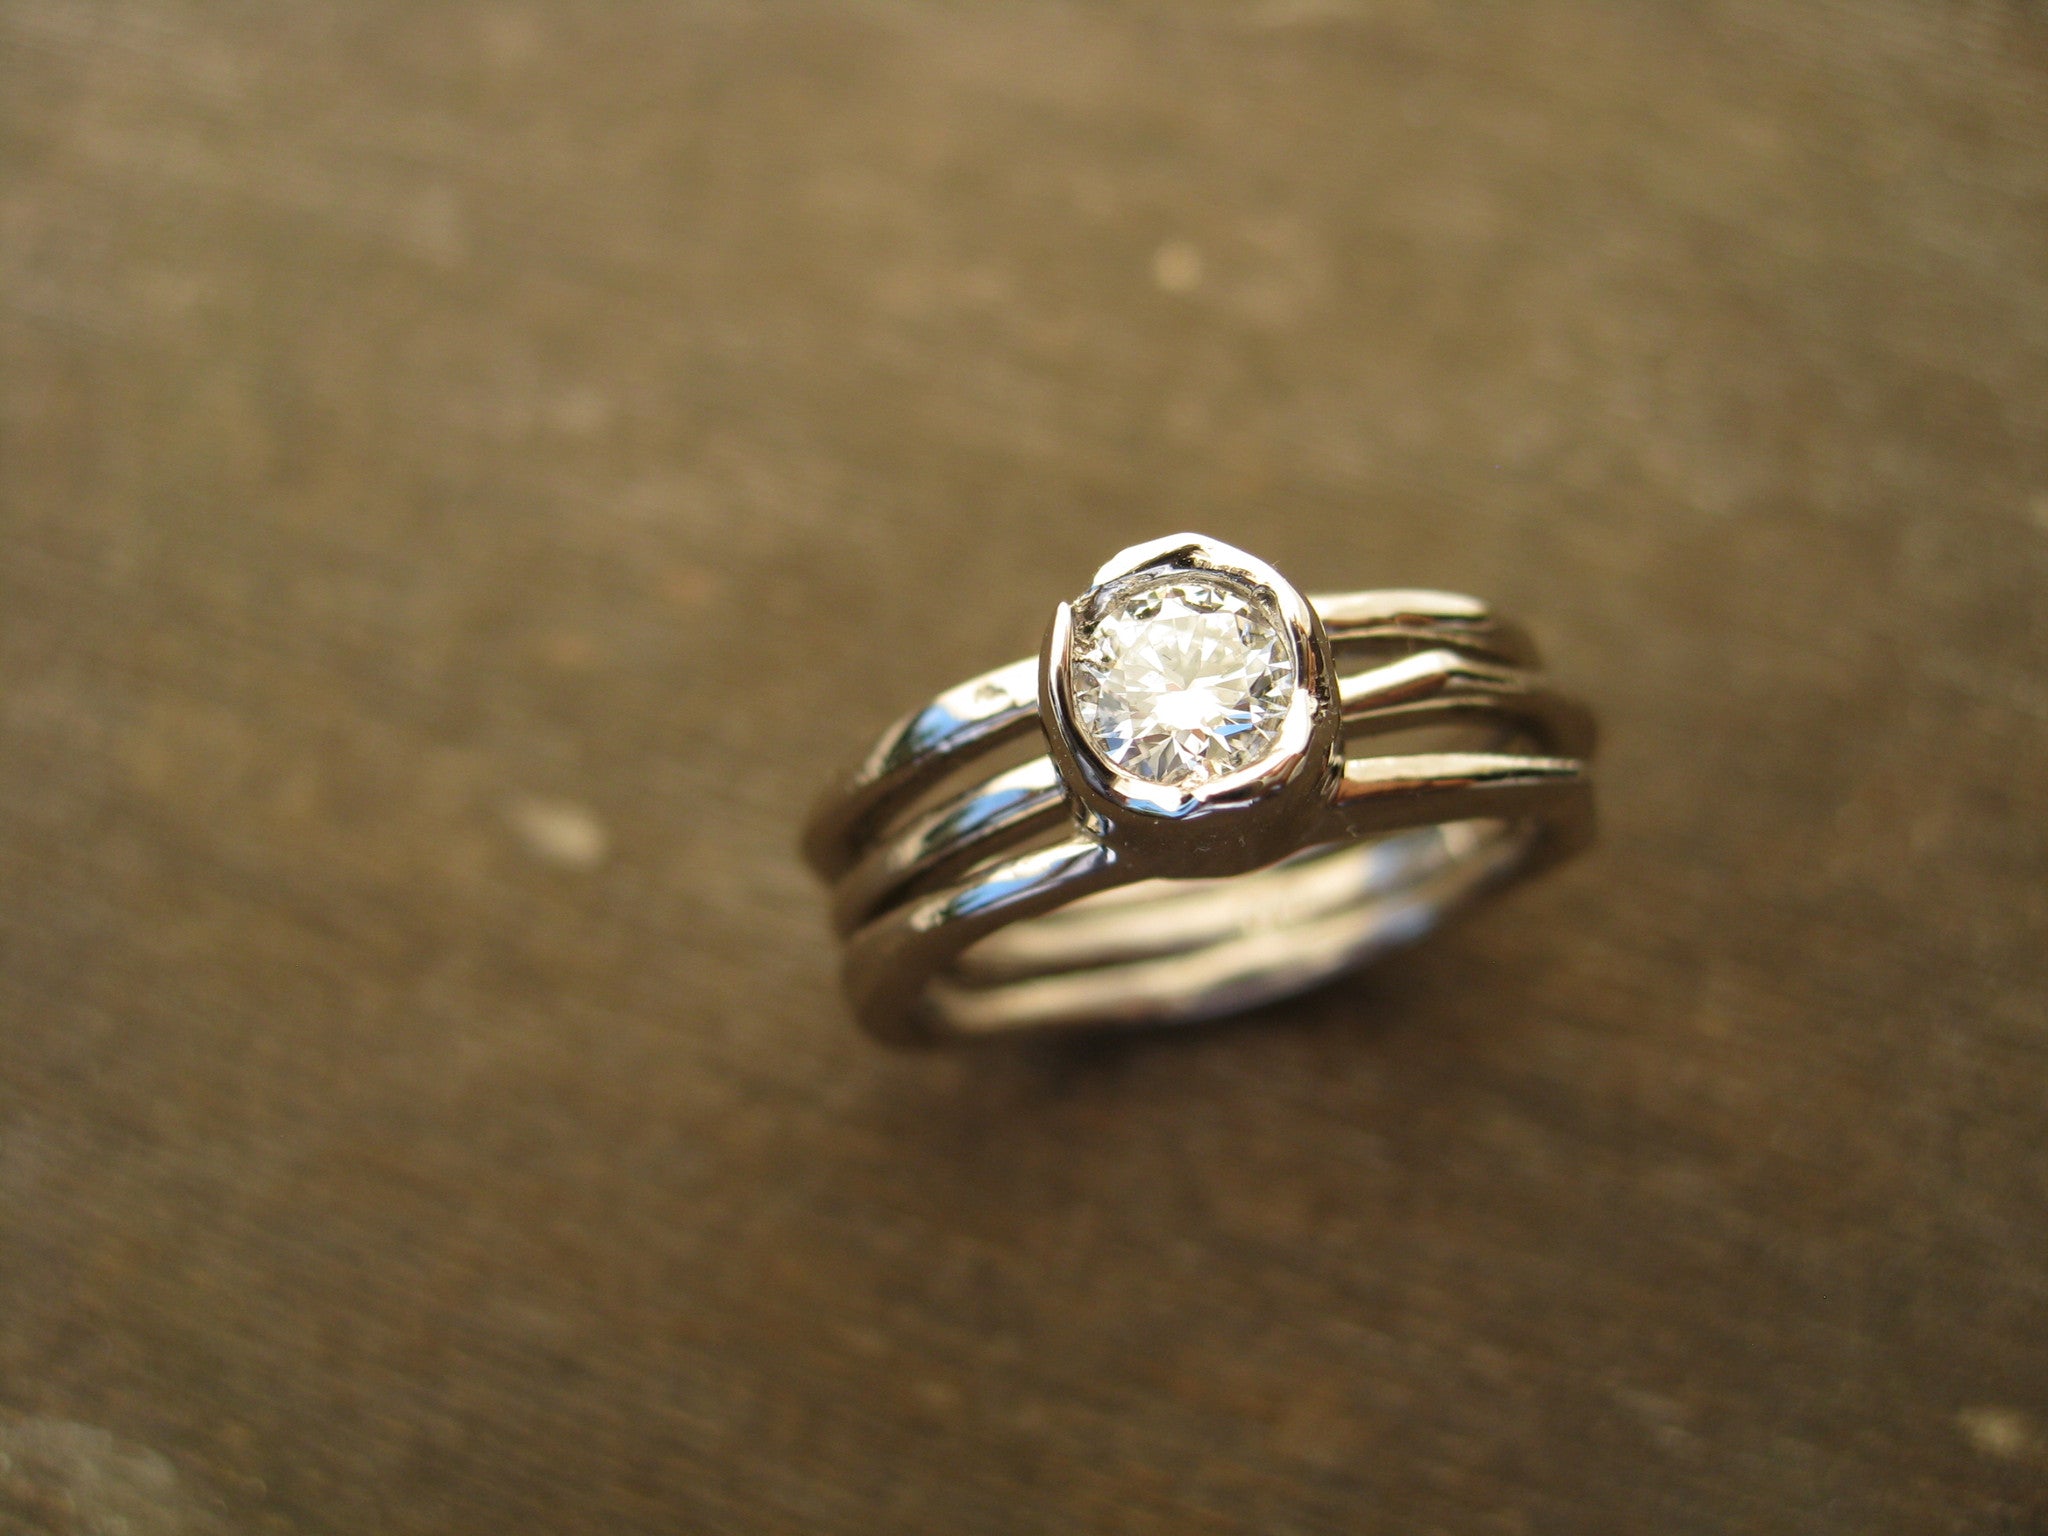 heather arbutus wedding ring set